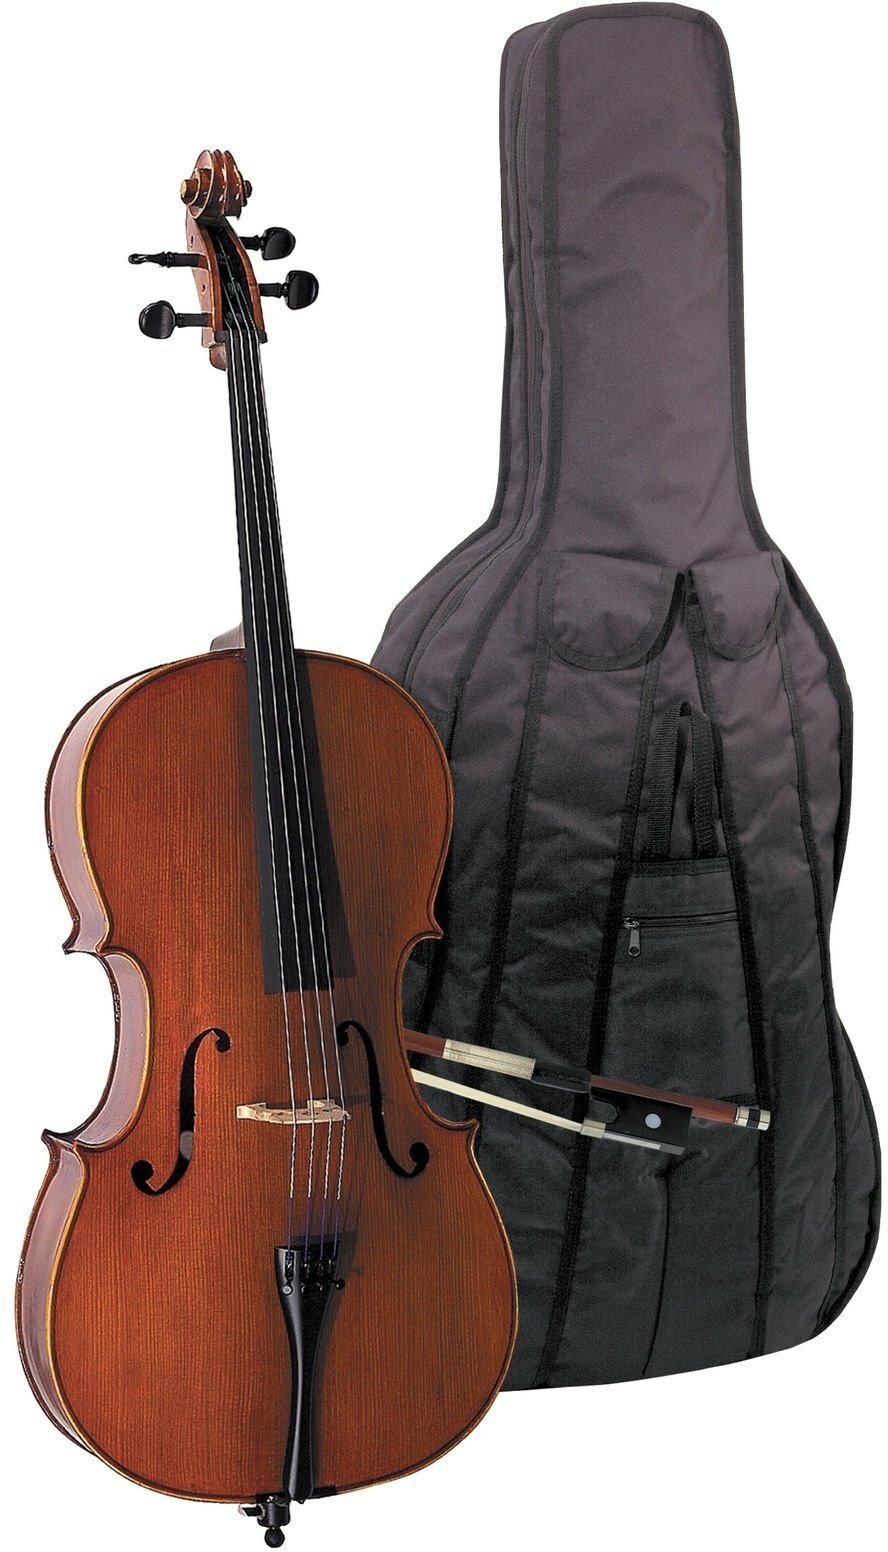 Gewa Ensemble Violoncelle Ew 3/4 - Acoustic cello - Main picture